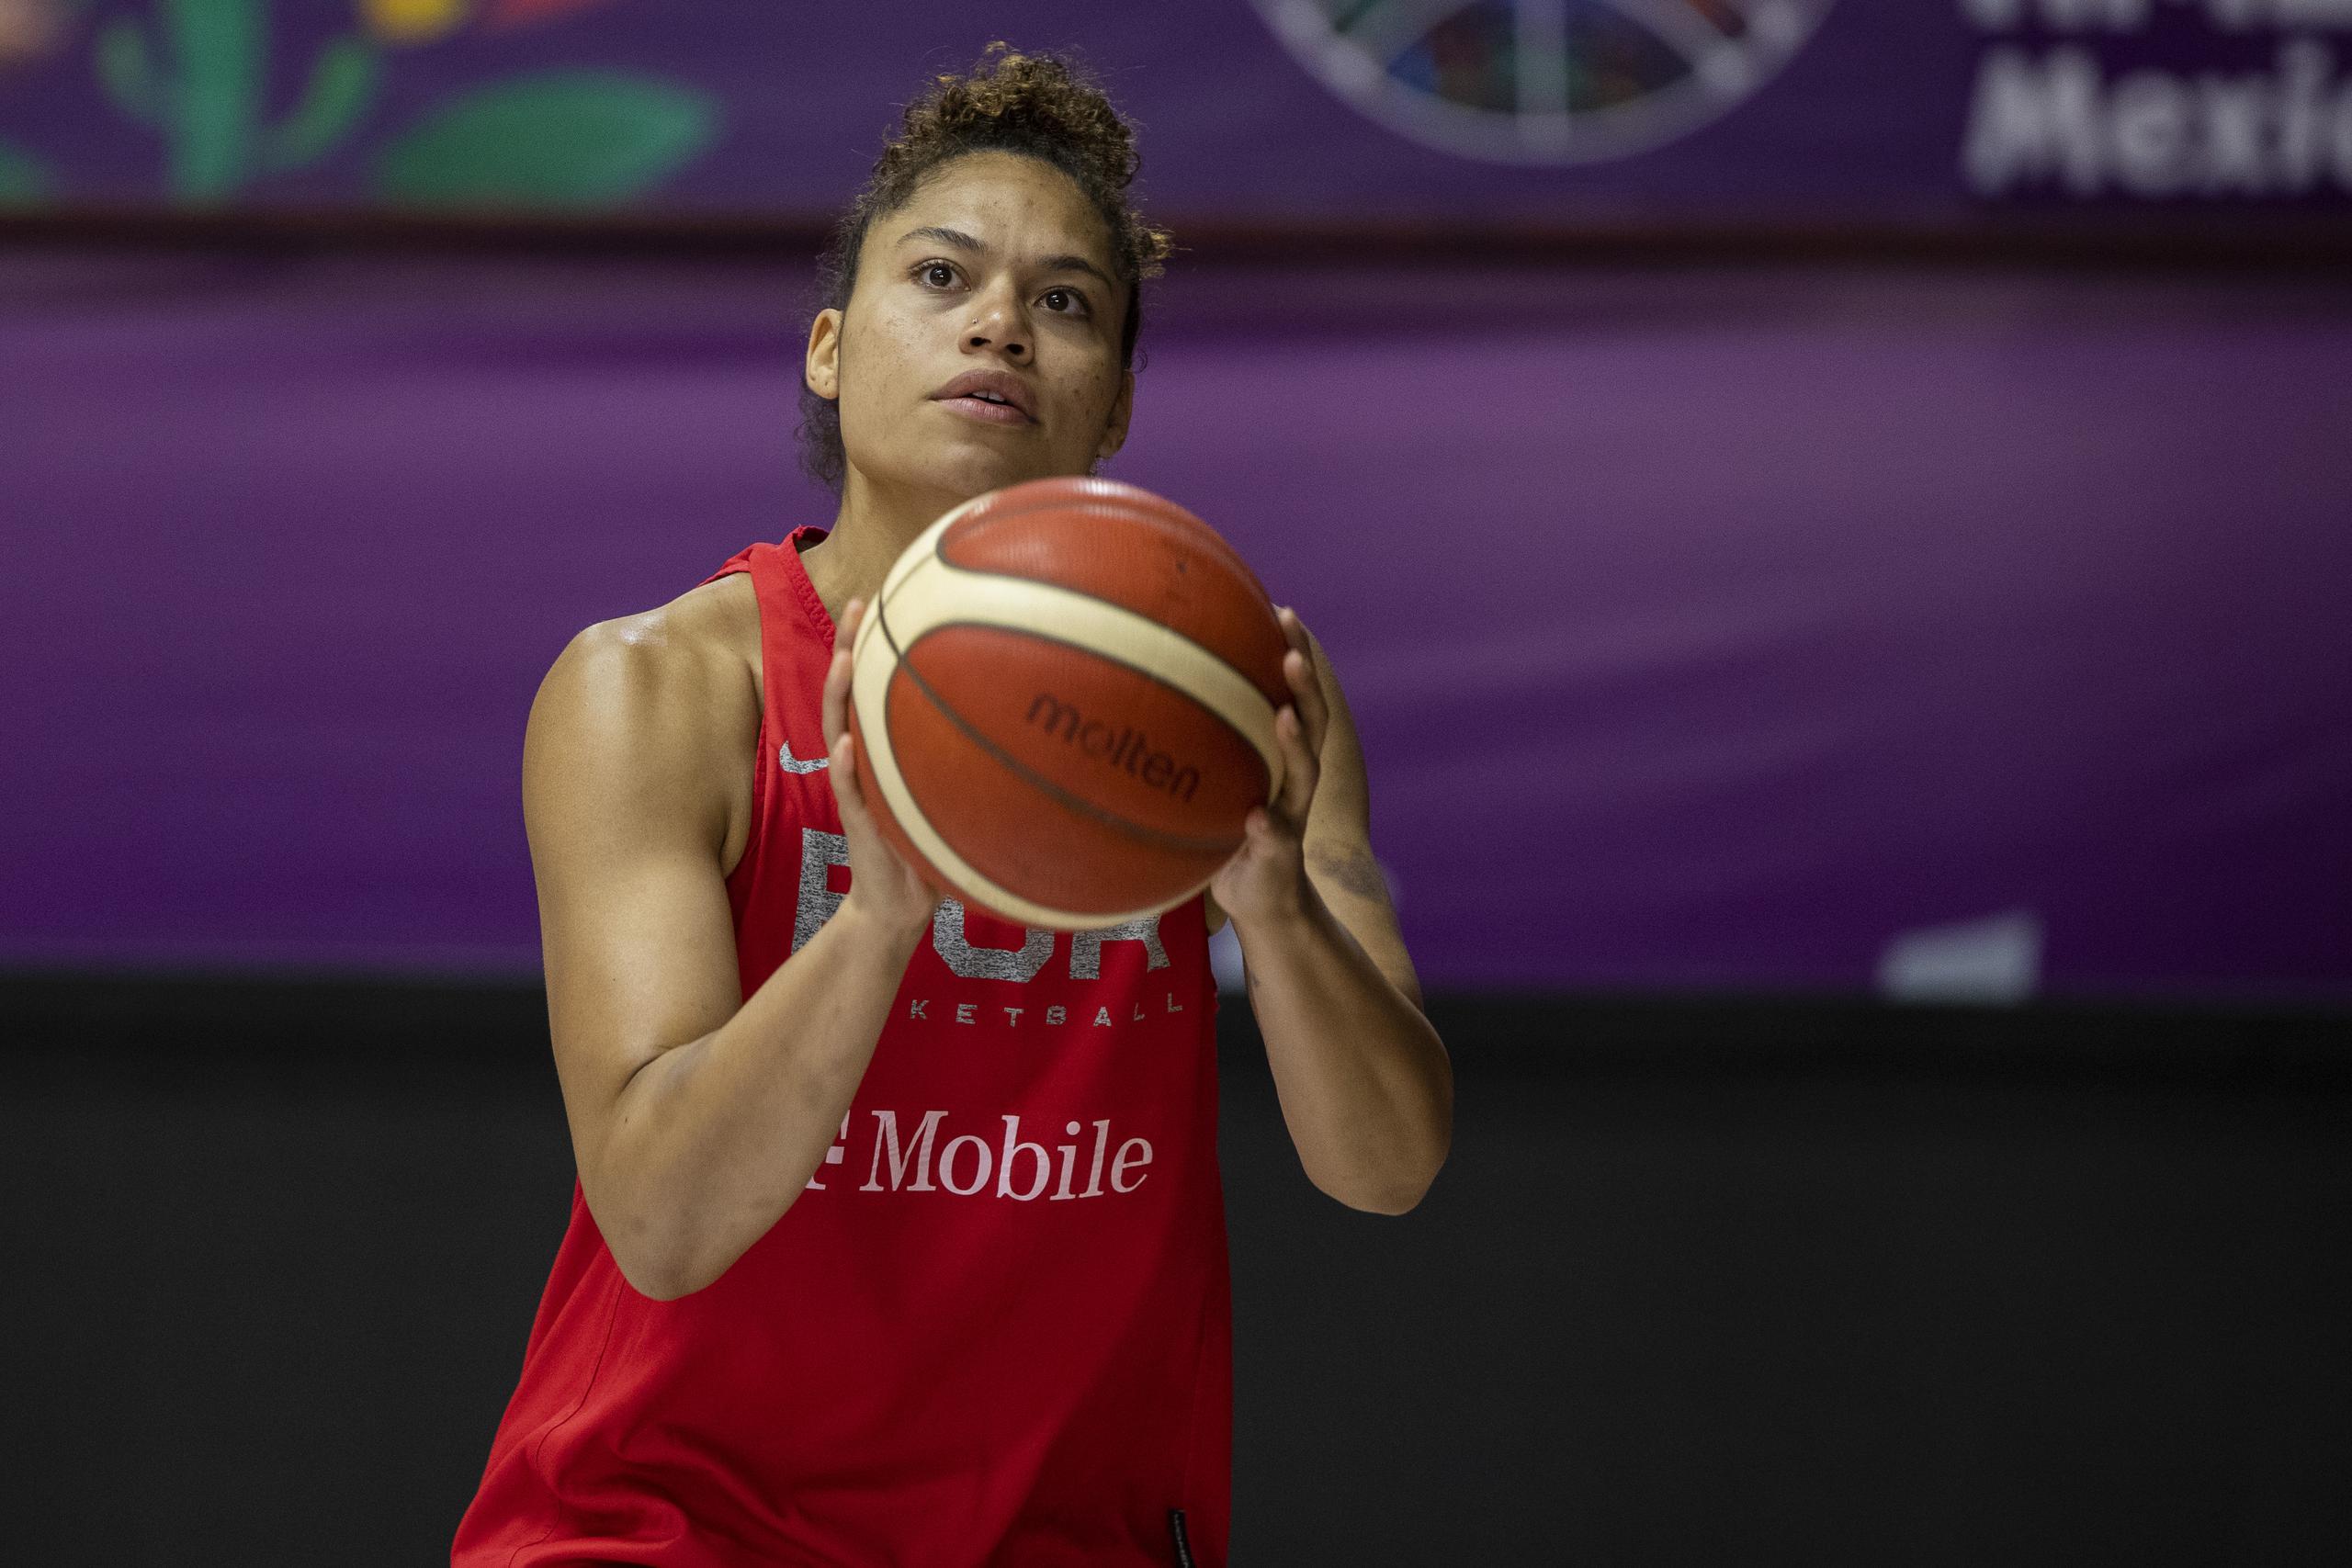 Brianna Jones juega actualmente para los Halcones de Xalapa en la liga mexicana de baloncesto.